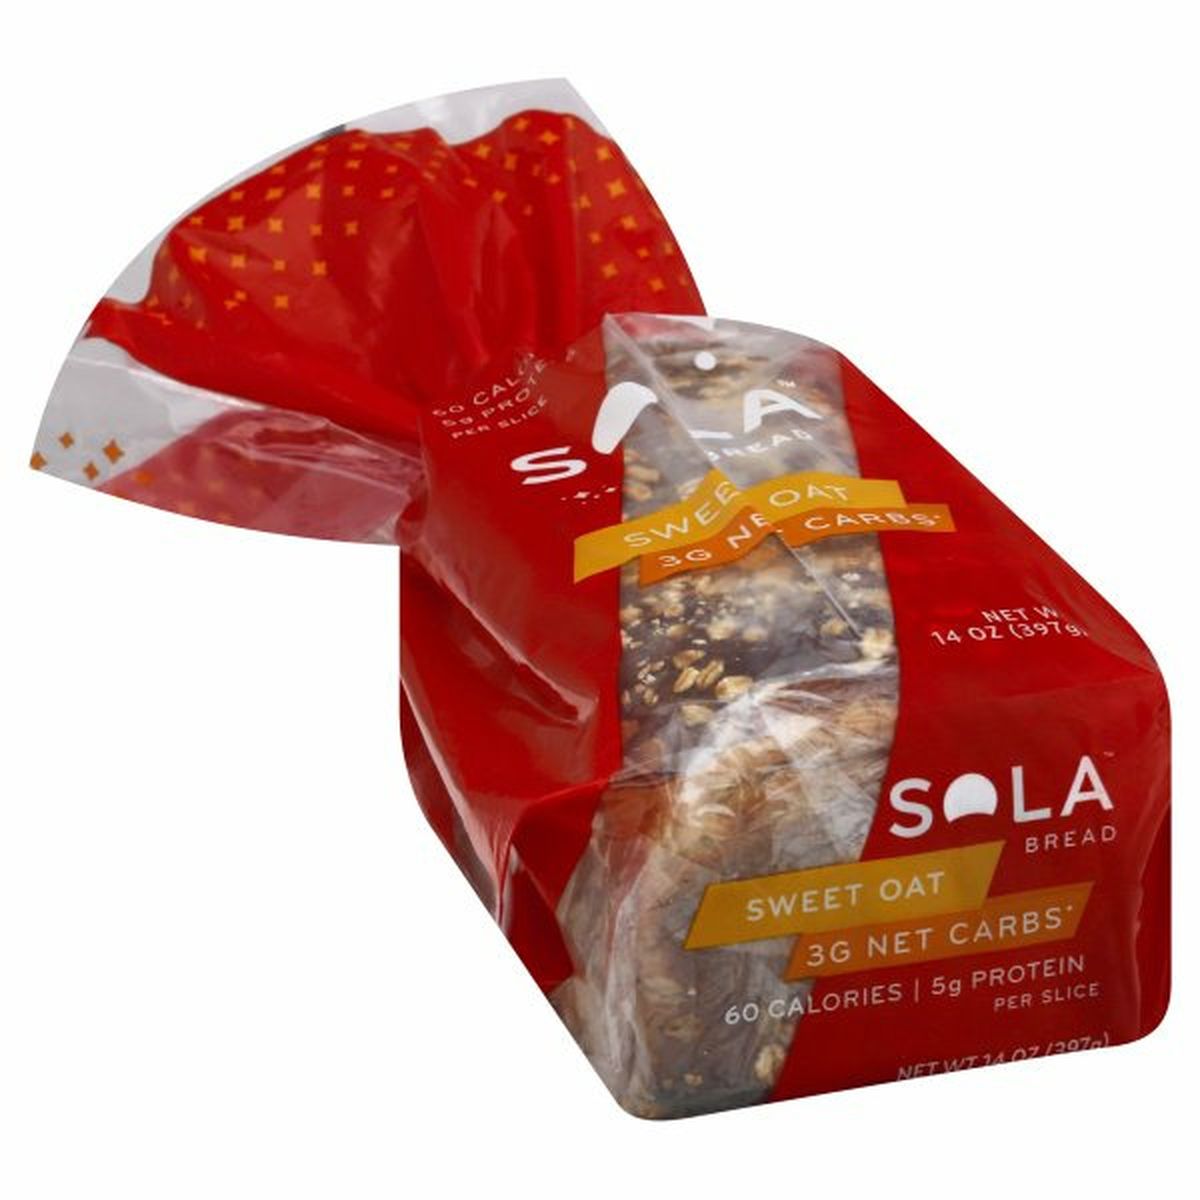 Calories in Sola Bread, Sweet Oat